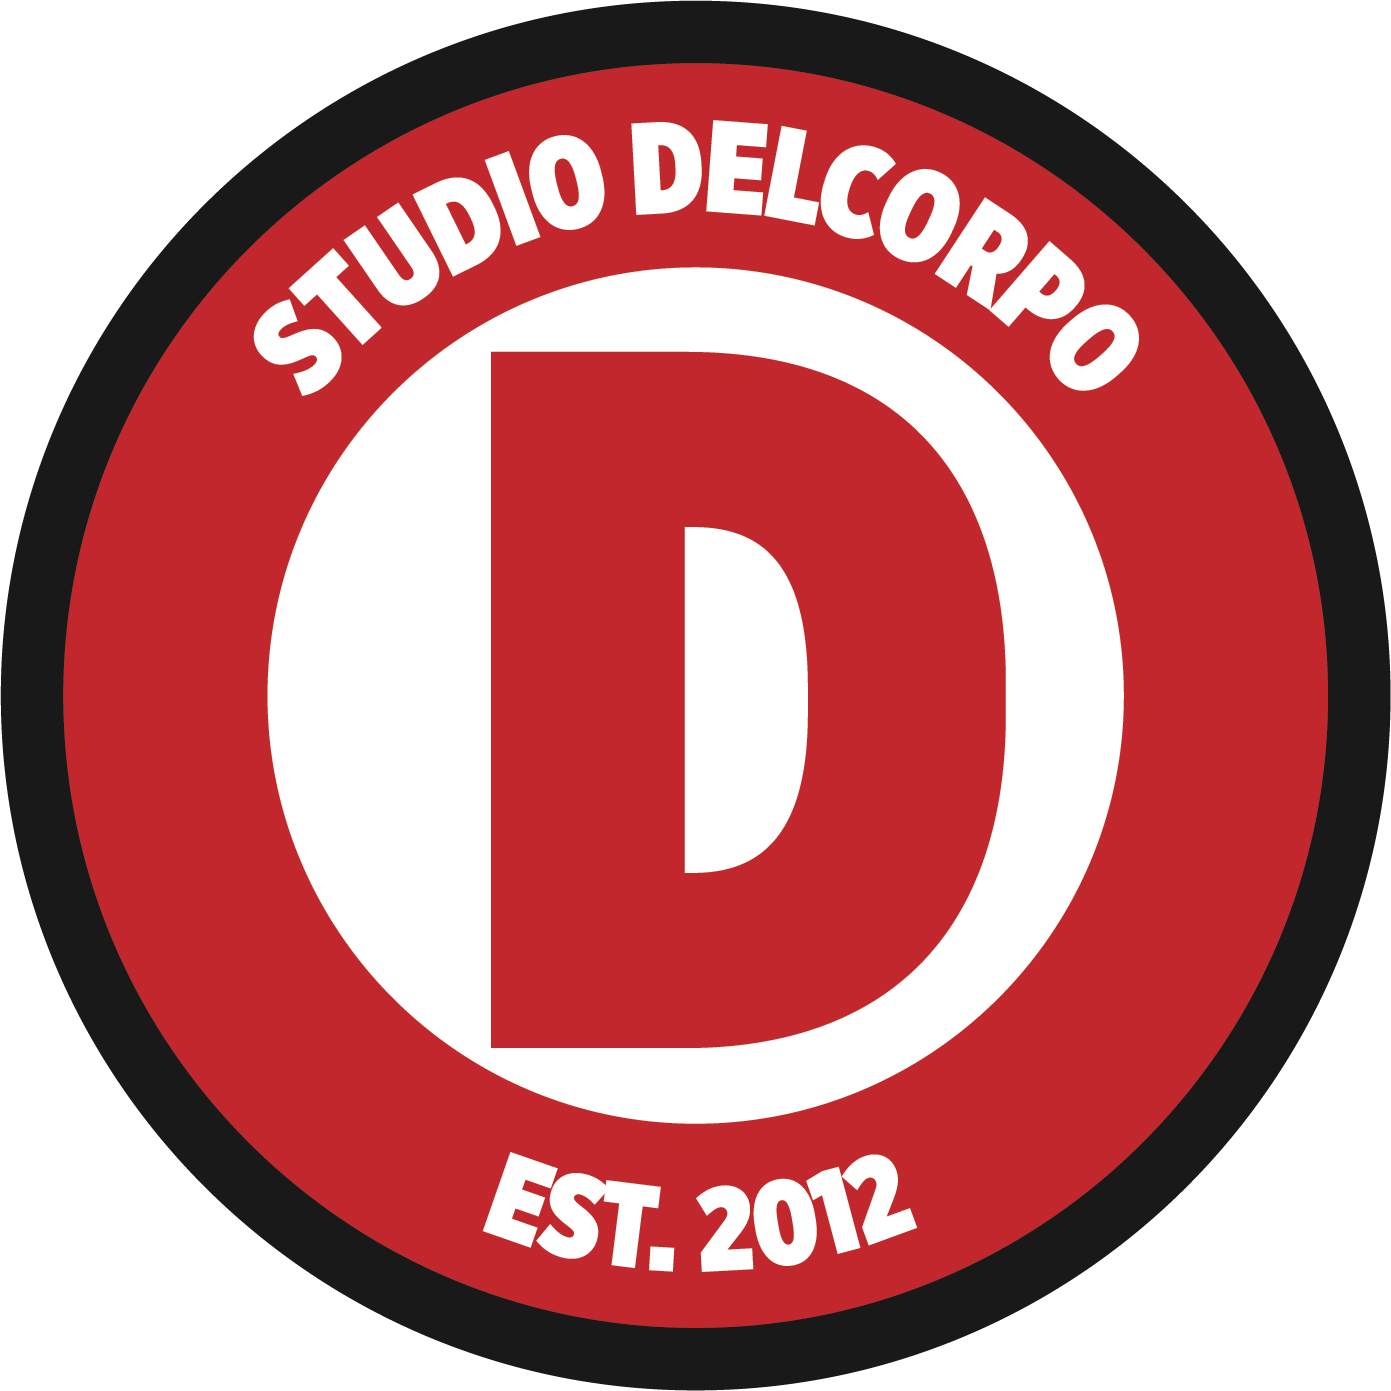 Studio Delcorpo